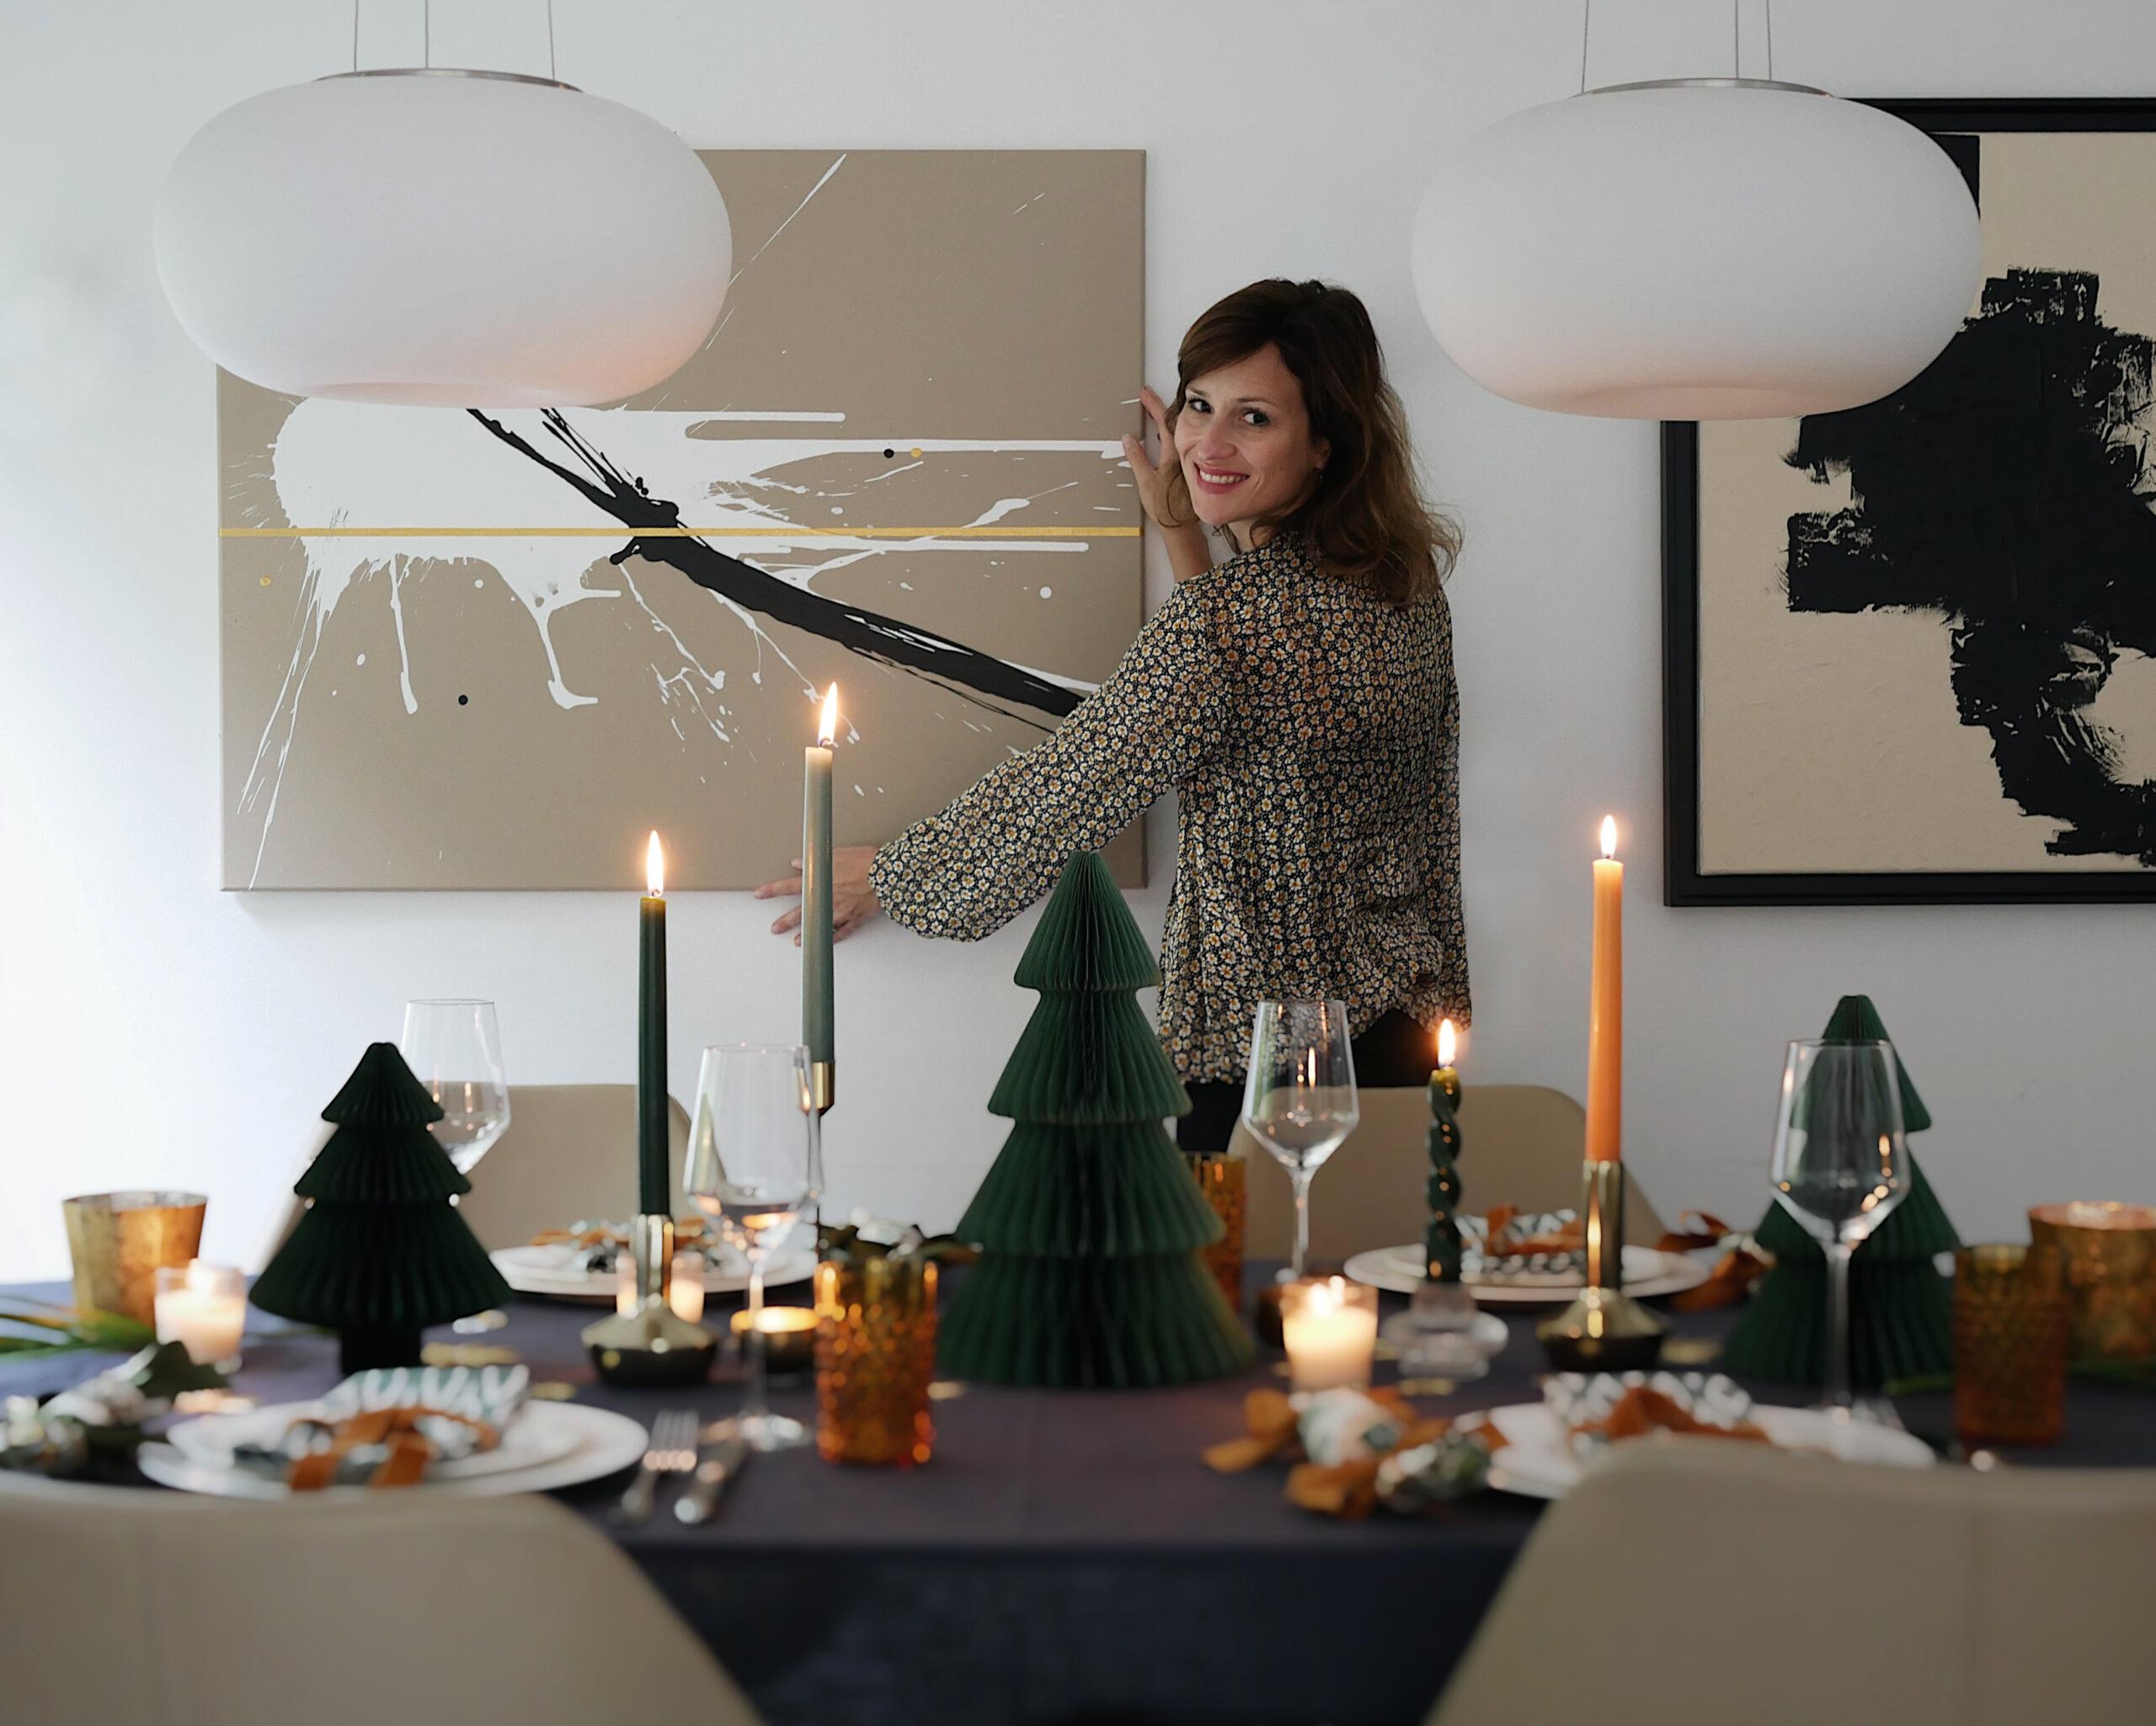 Tischgespräche über Wohnkunst - Salon-Runde bei Malerin Stephanie von der Neyen